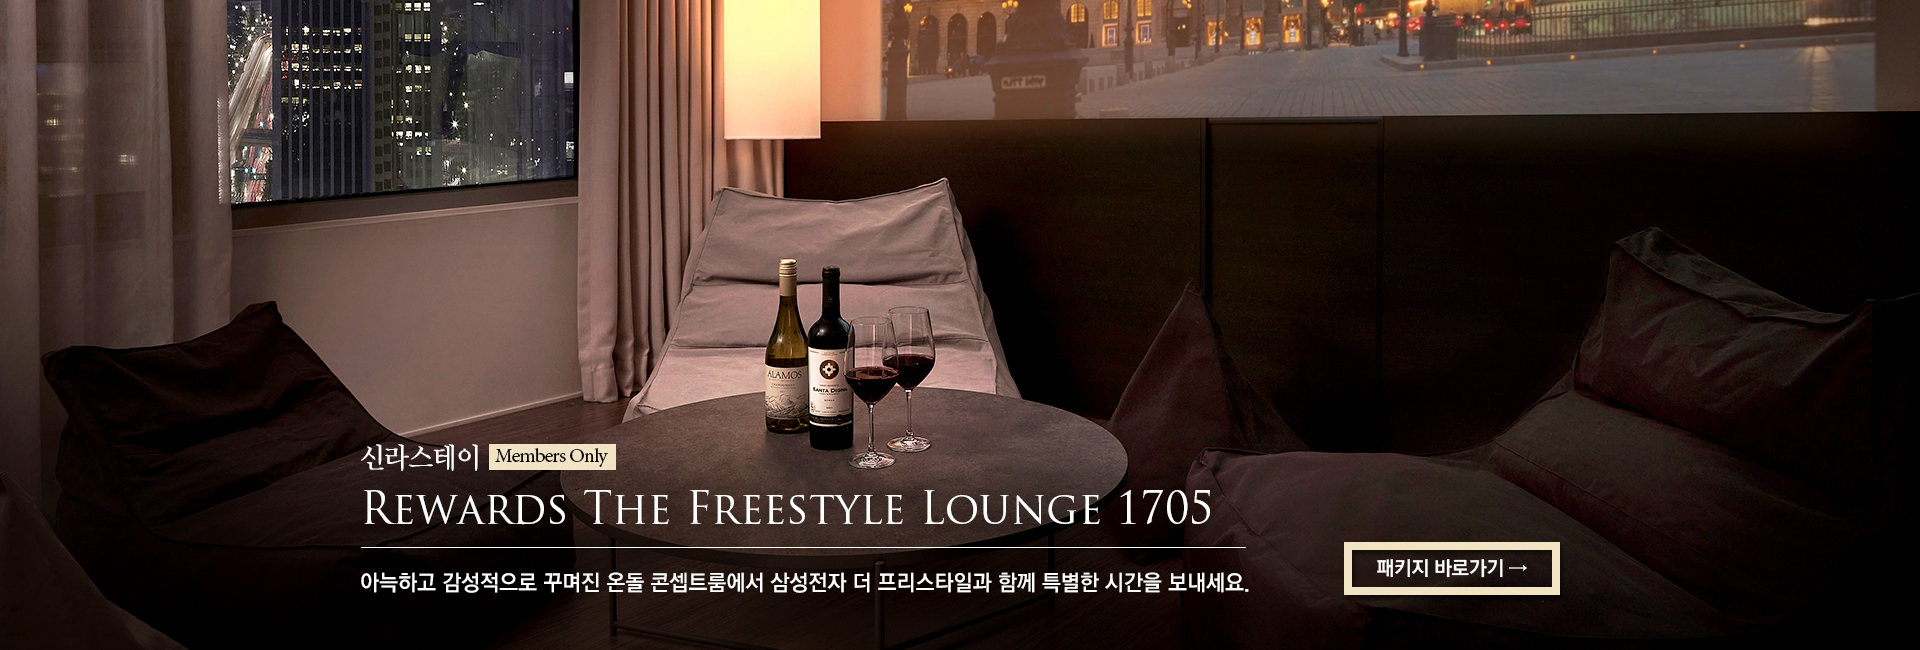 [신라스테이] 신라스테이 Rewards The Freestyle Lounge 1705- 아늑하고 감성적으로 꾸며진 온돌 콘셉트룸에서 삼성전자 더 프리스타일과 함께 특별한 시간을 보내세요